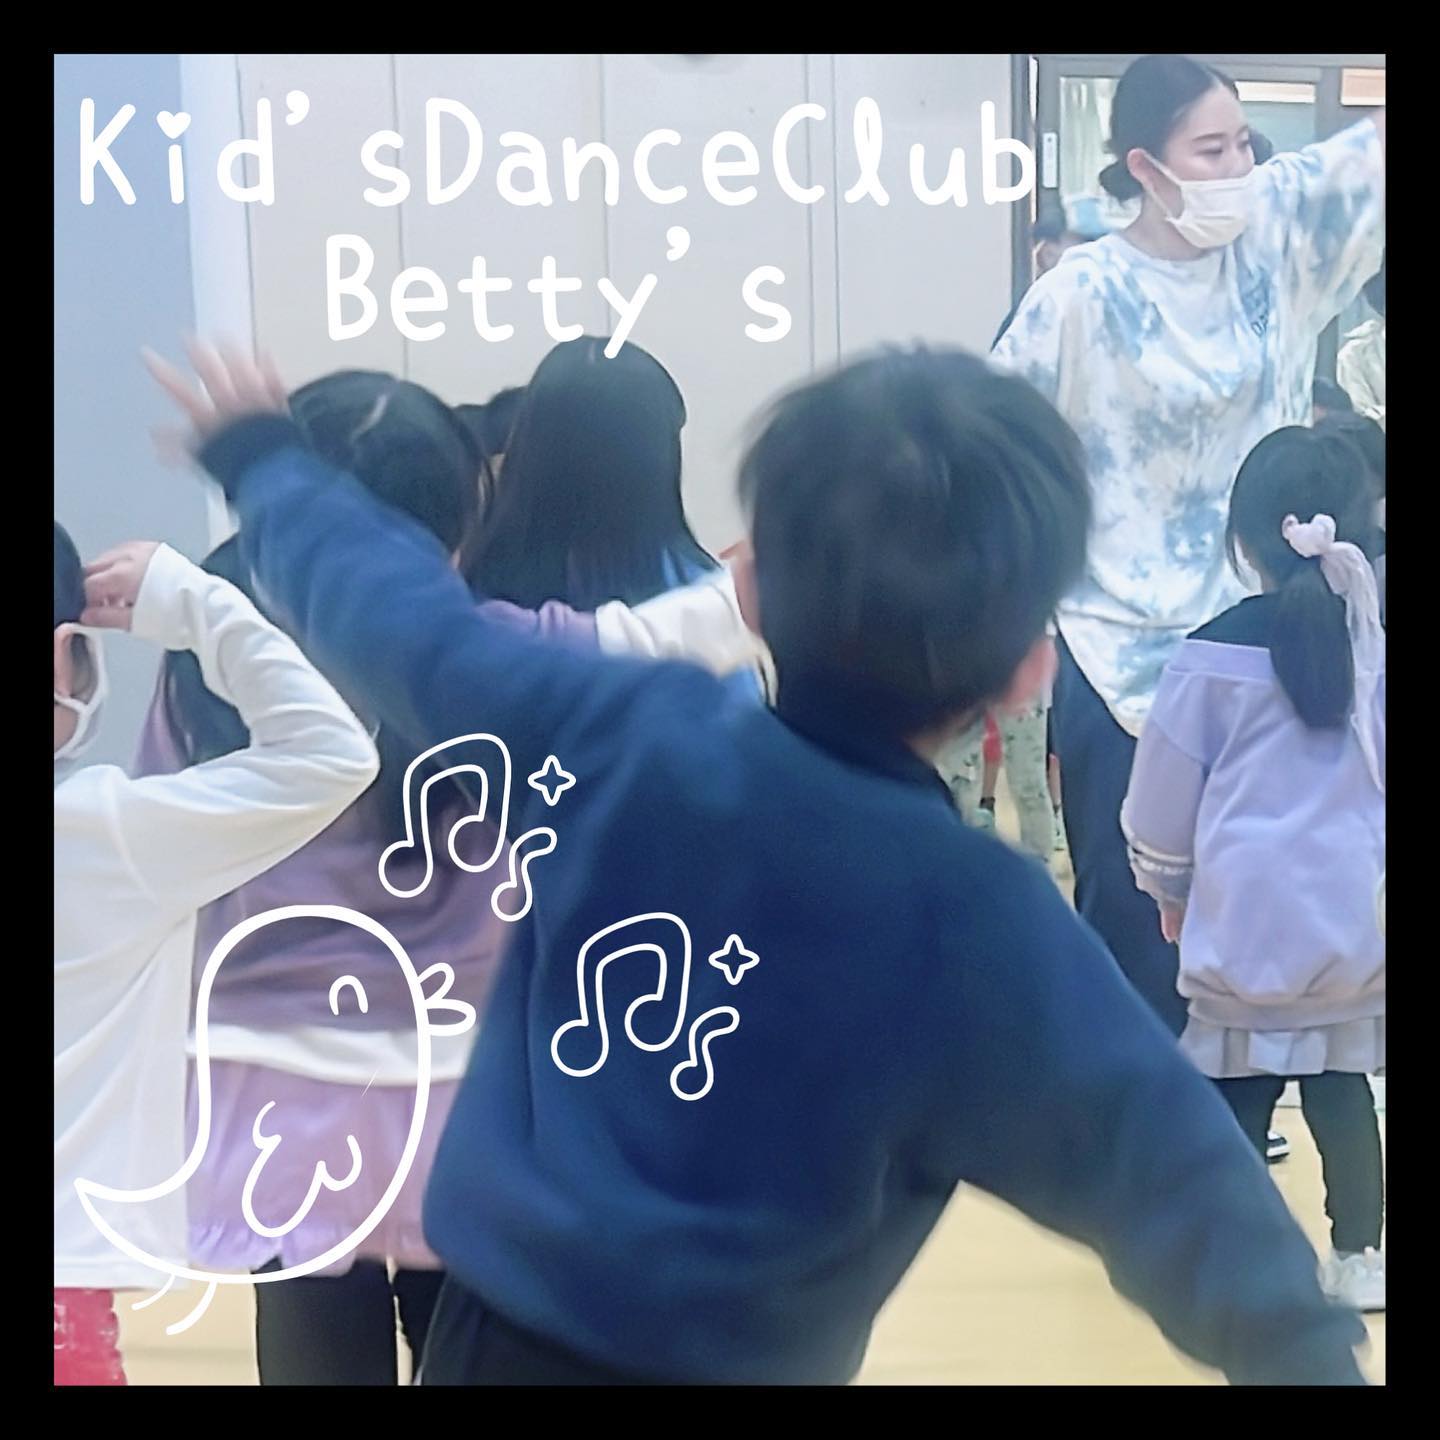 kidsdanceclubbettys